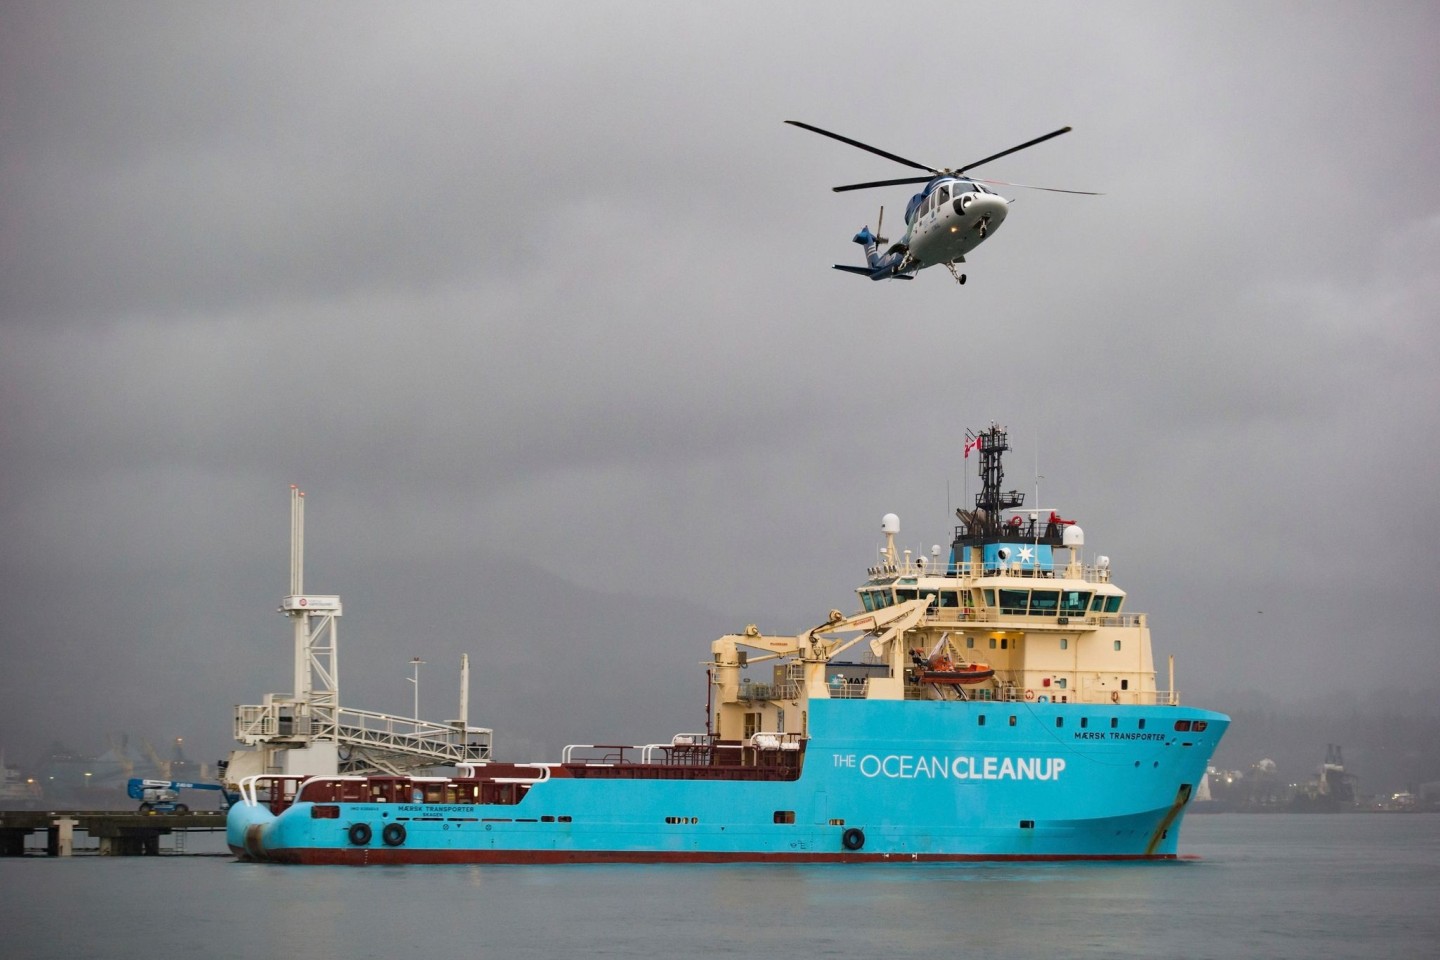 Das Schiff der niederländischen Gruppe «The Ocean Cleanup» ist während eines Zwischenstopps im Hafen von Vancouver zu sehen.